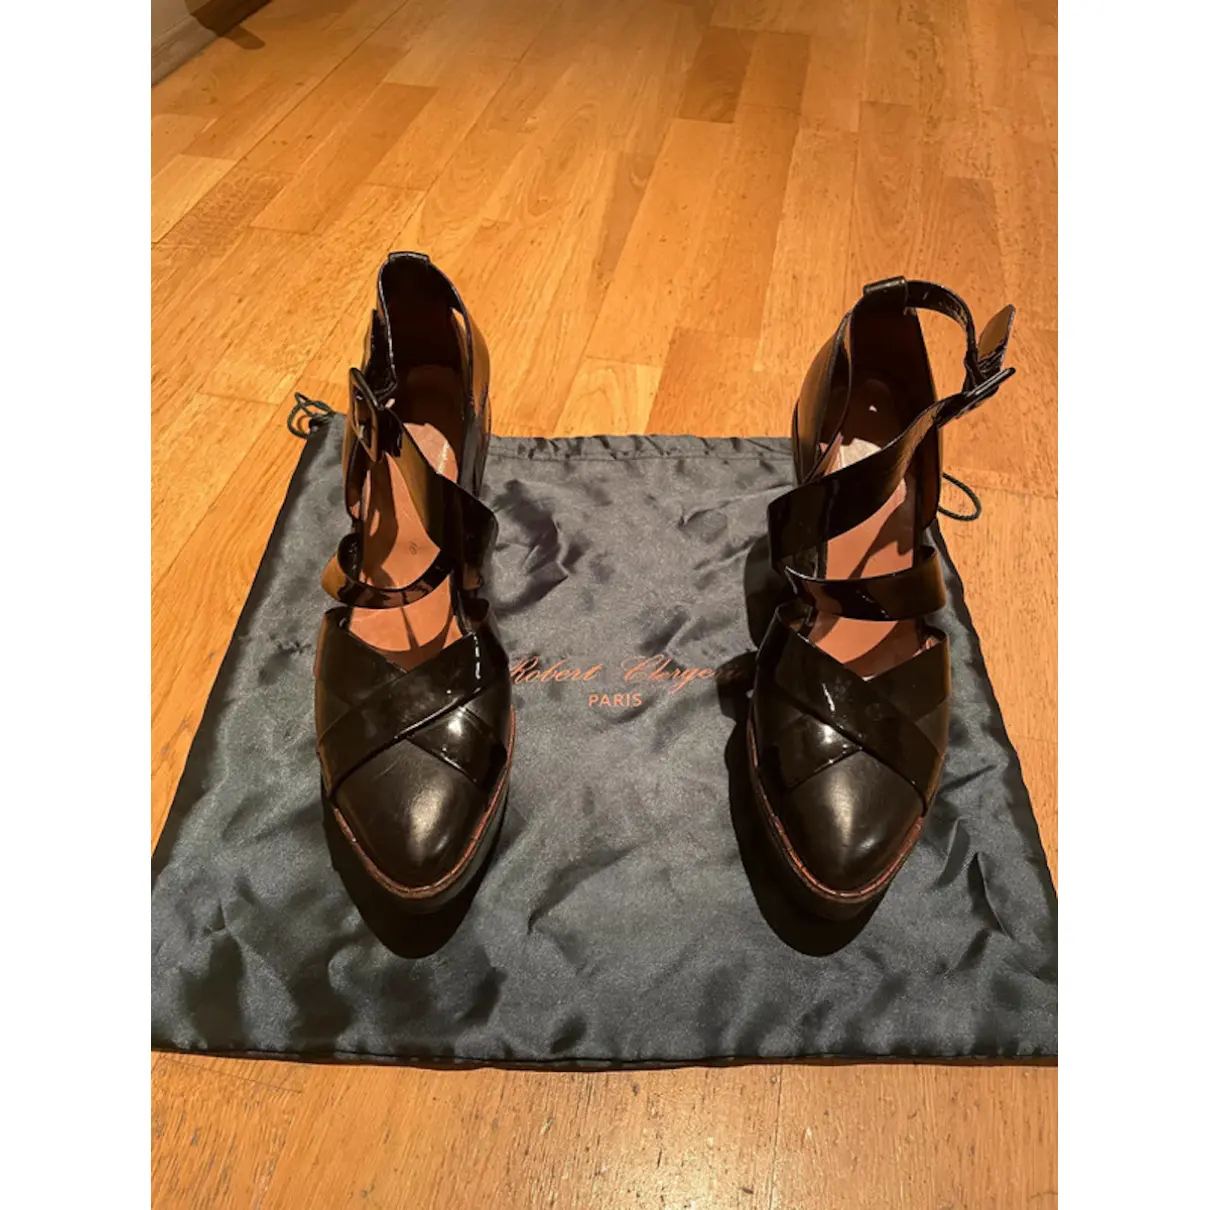 Buy Robert Clergerie Leather heels online